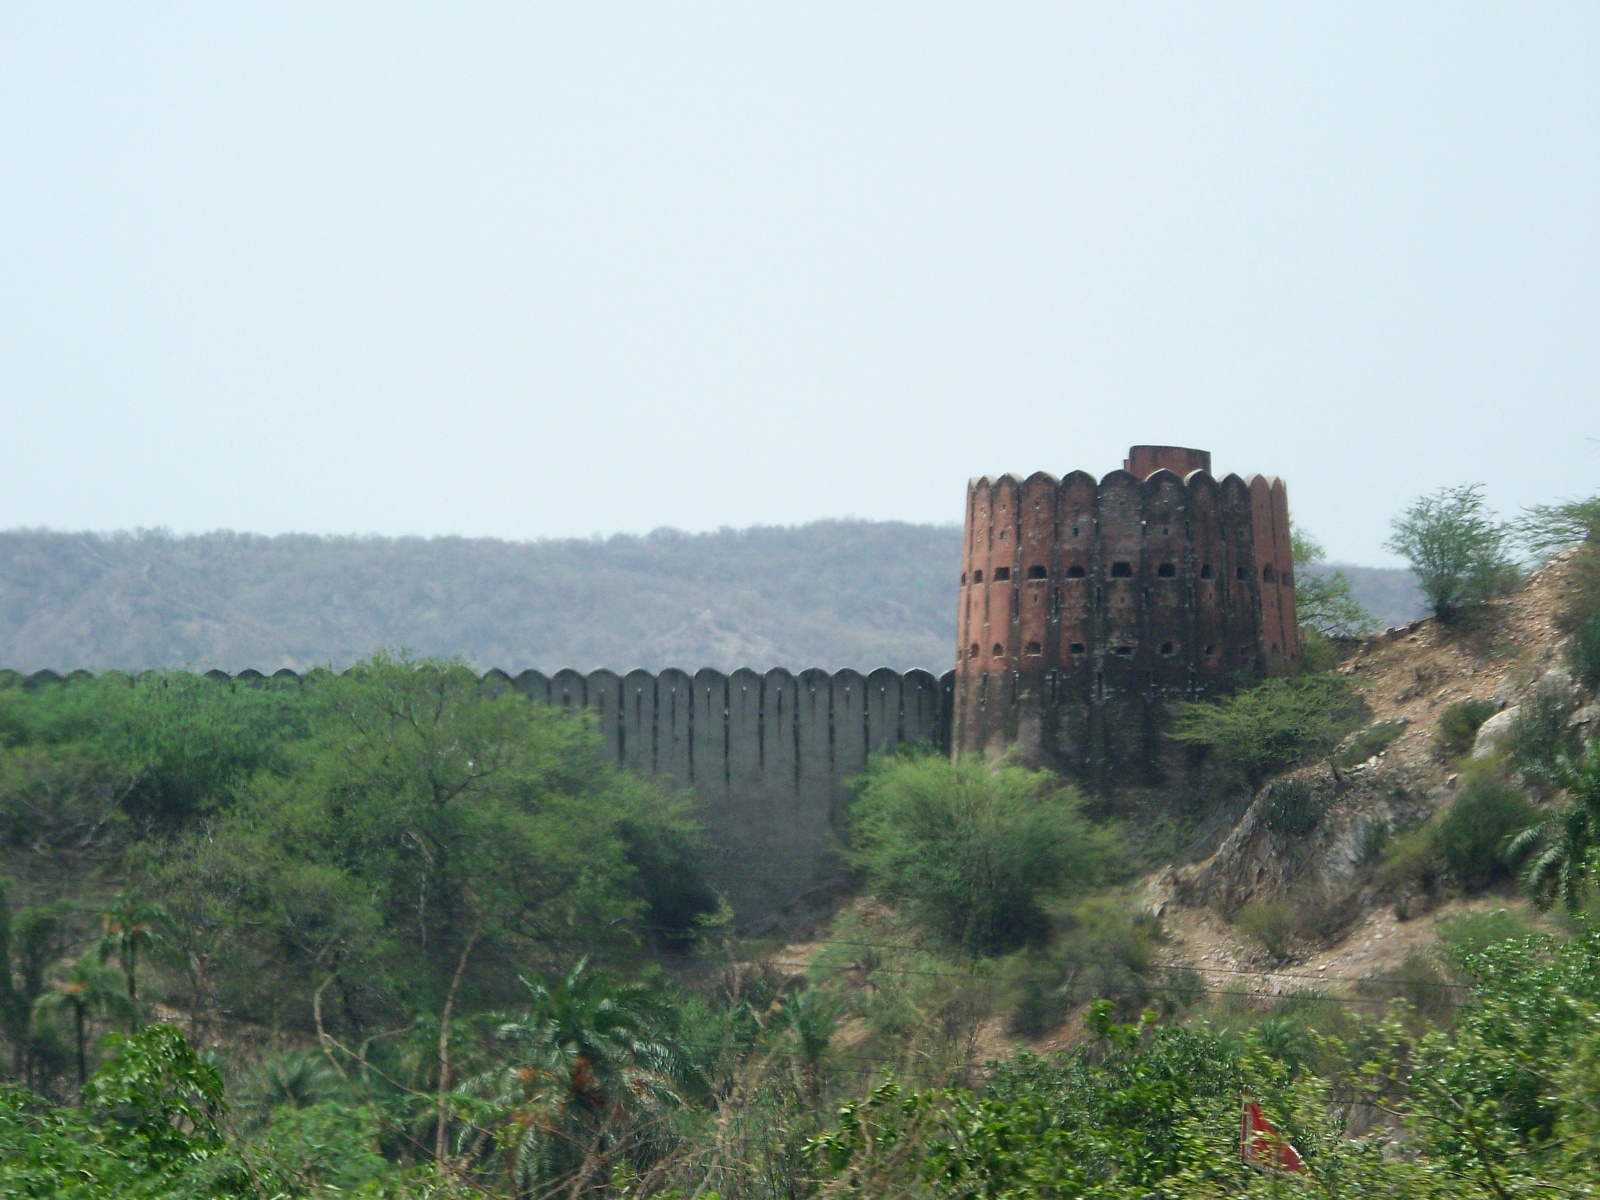 View of the fortresslike dam of Jal Mahal Sagar.